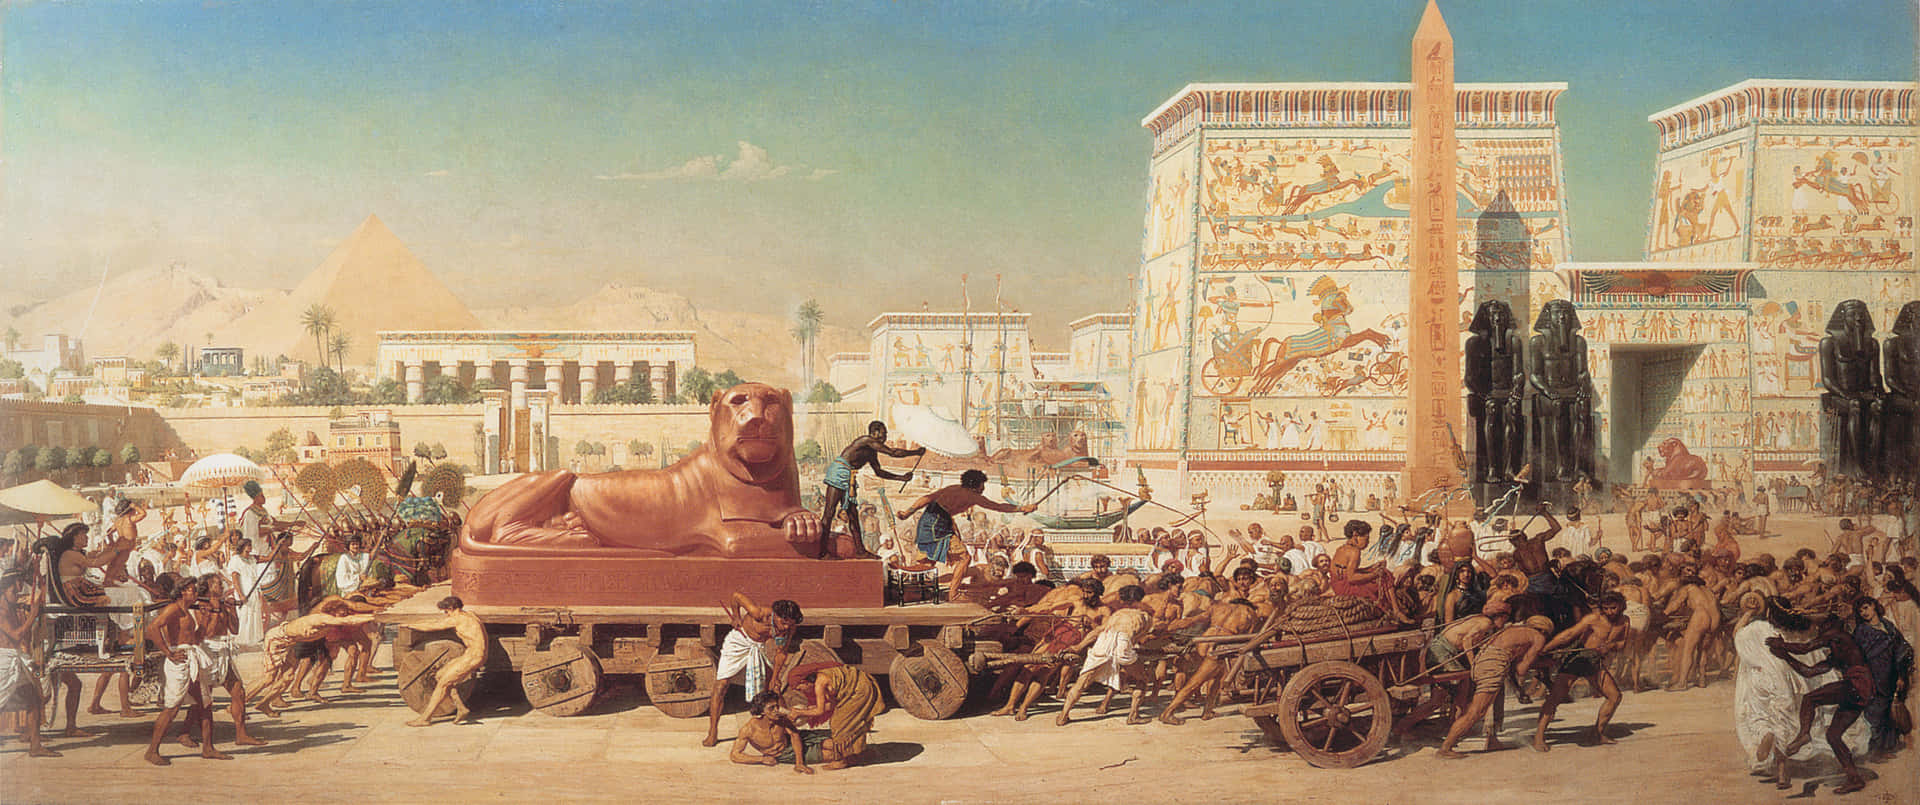 Descubrela Belleza De La Antigua Civilización Egipcia Con Estos Impresionantes Jeroglíficos.